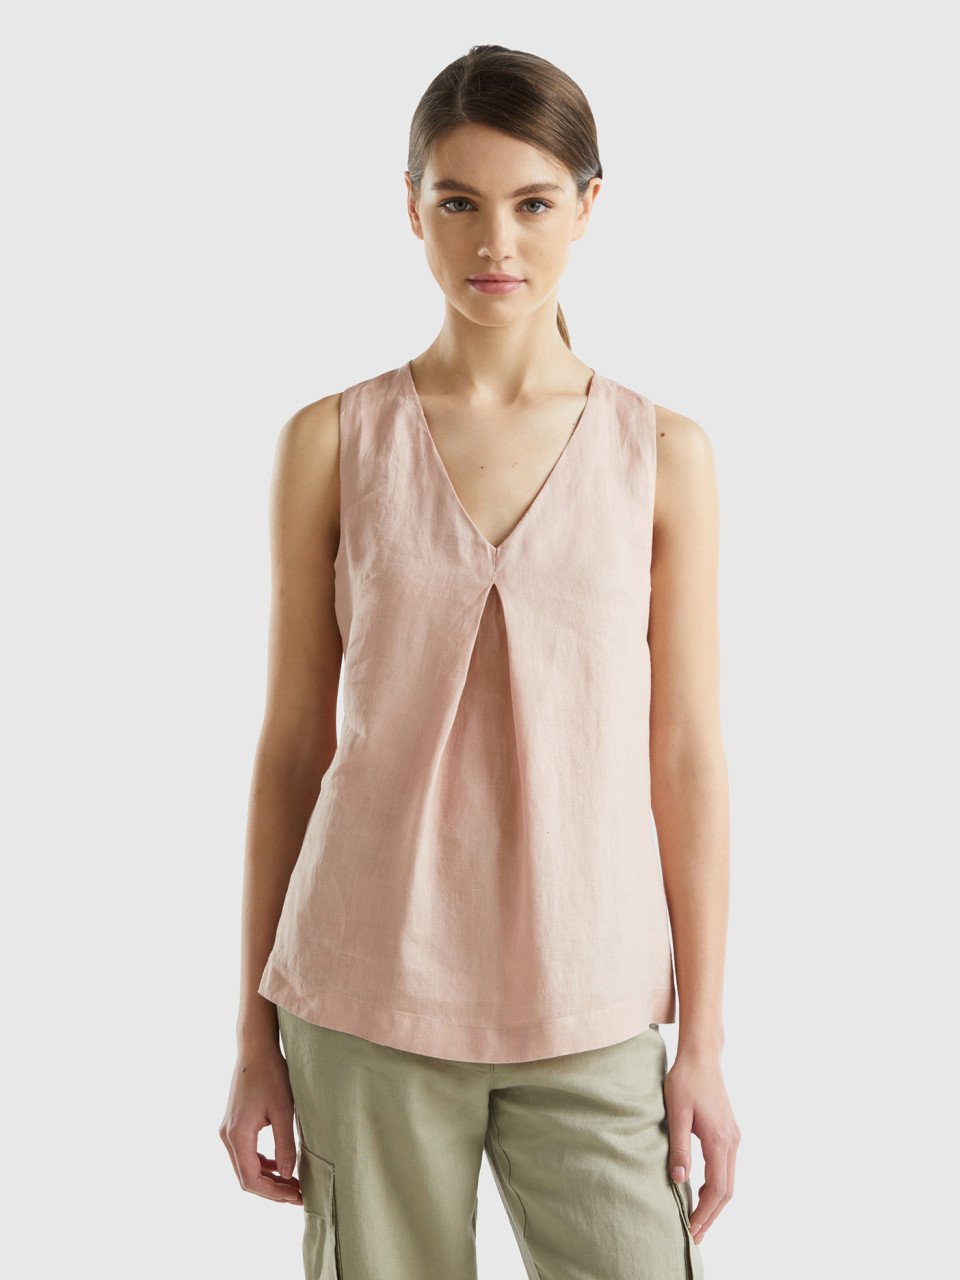 Benetton, Sleeveless Blouse In Pure Linen, Soft Pink, Women